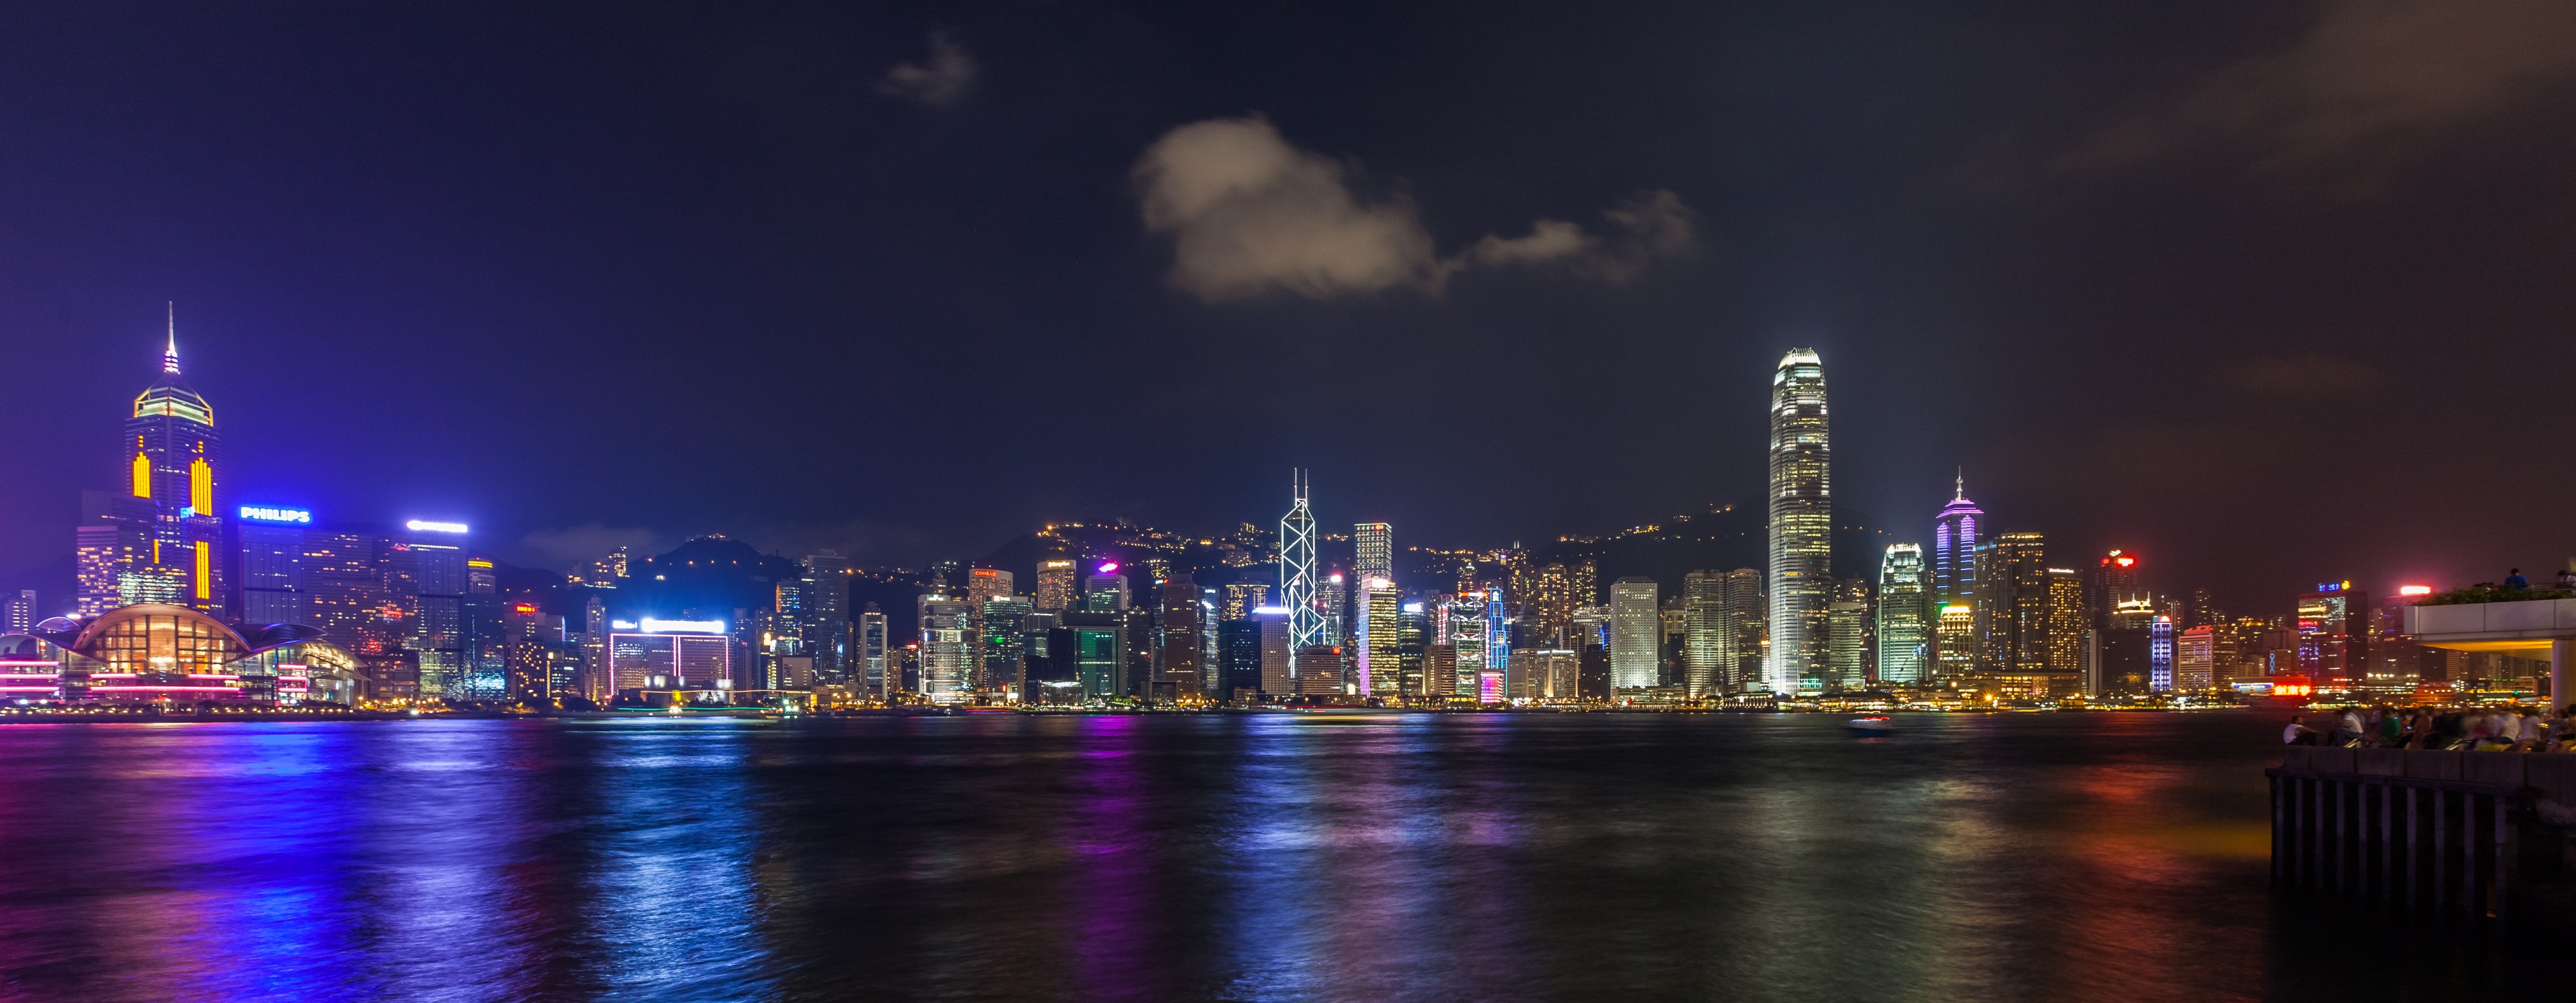 Vista del Puerto de Victoria desde Kowloon, Hong Kong, 2013-08-11, DD 09